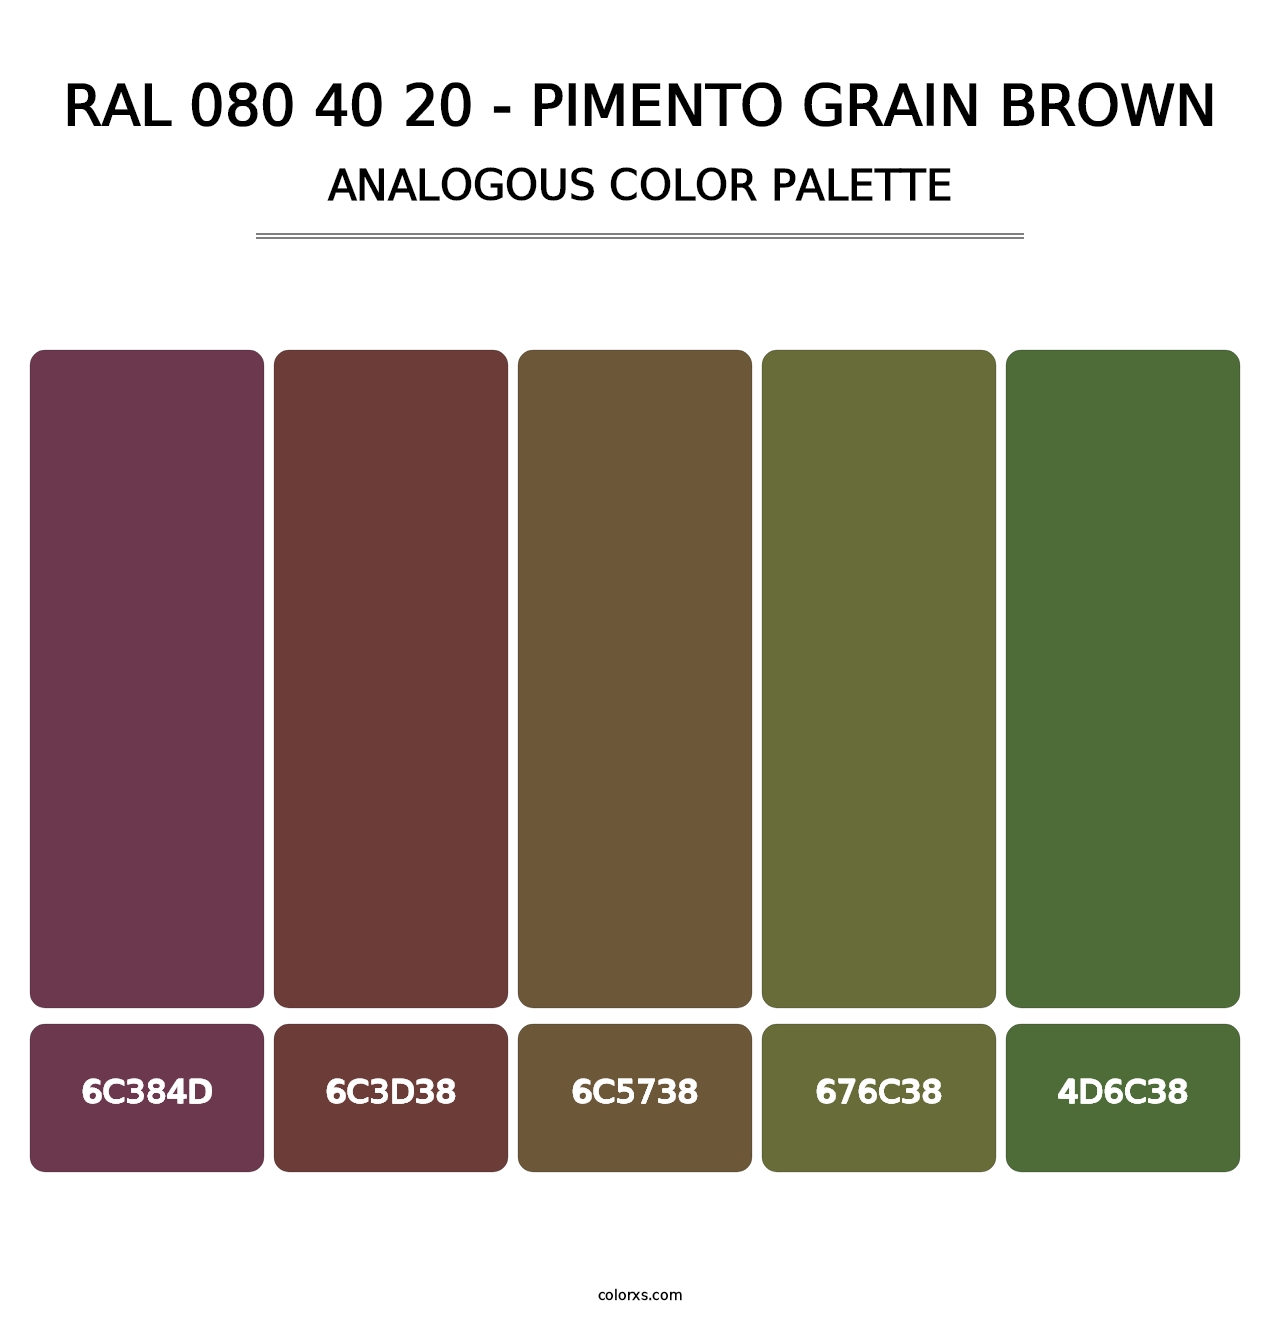 RAL 080 40 20 - Pimento Grain Brown - Analogous Color Palette